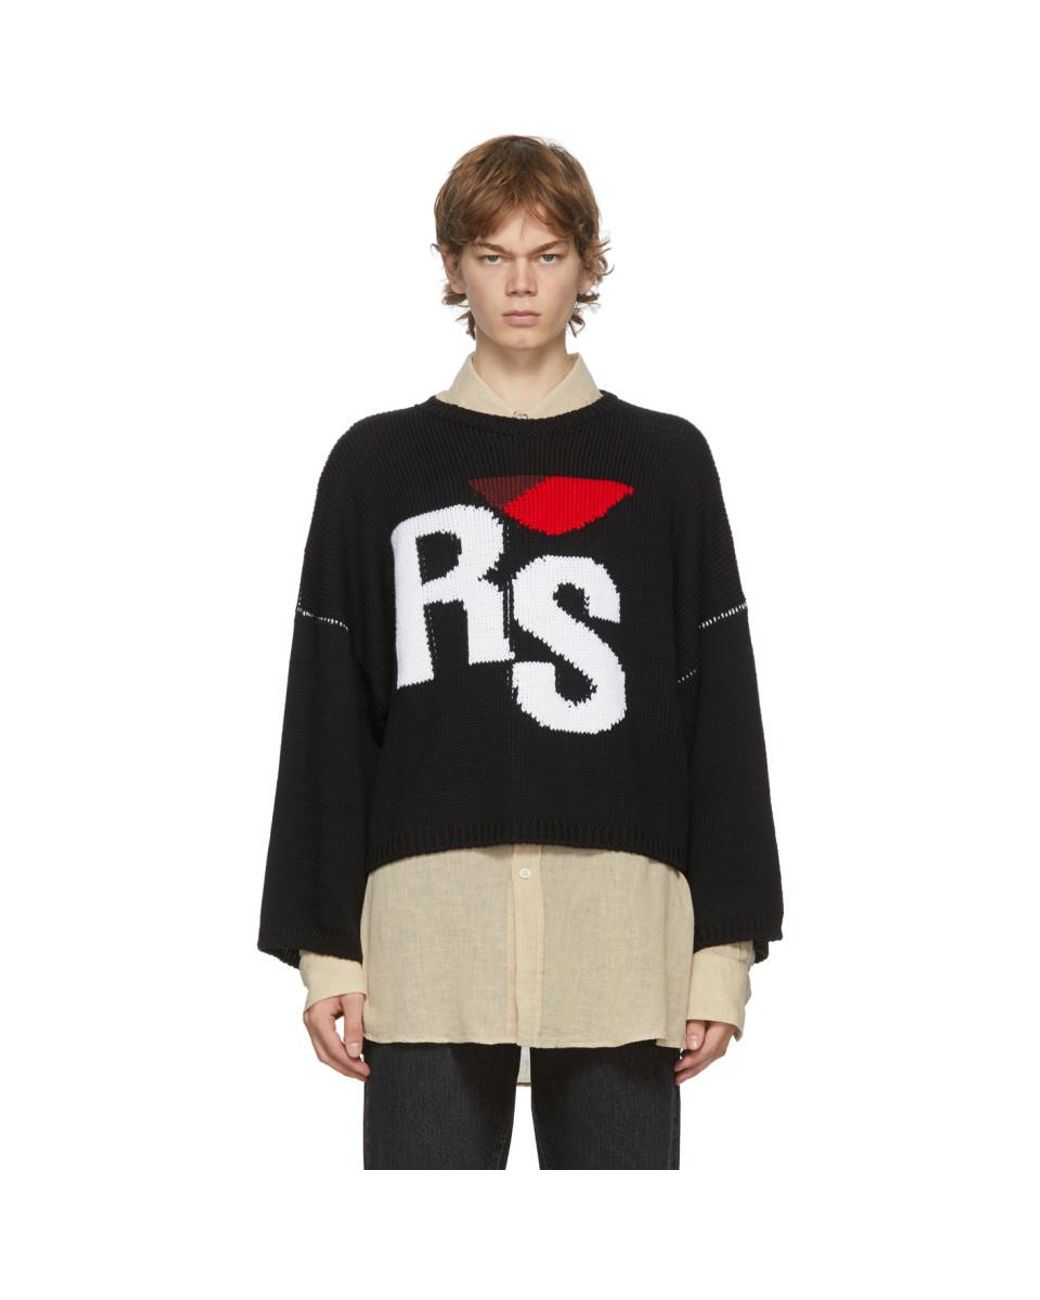 Raf Simons Wool Black Oversized Rs Sweater for Men - Lyst